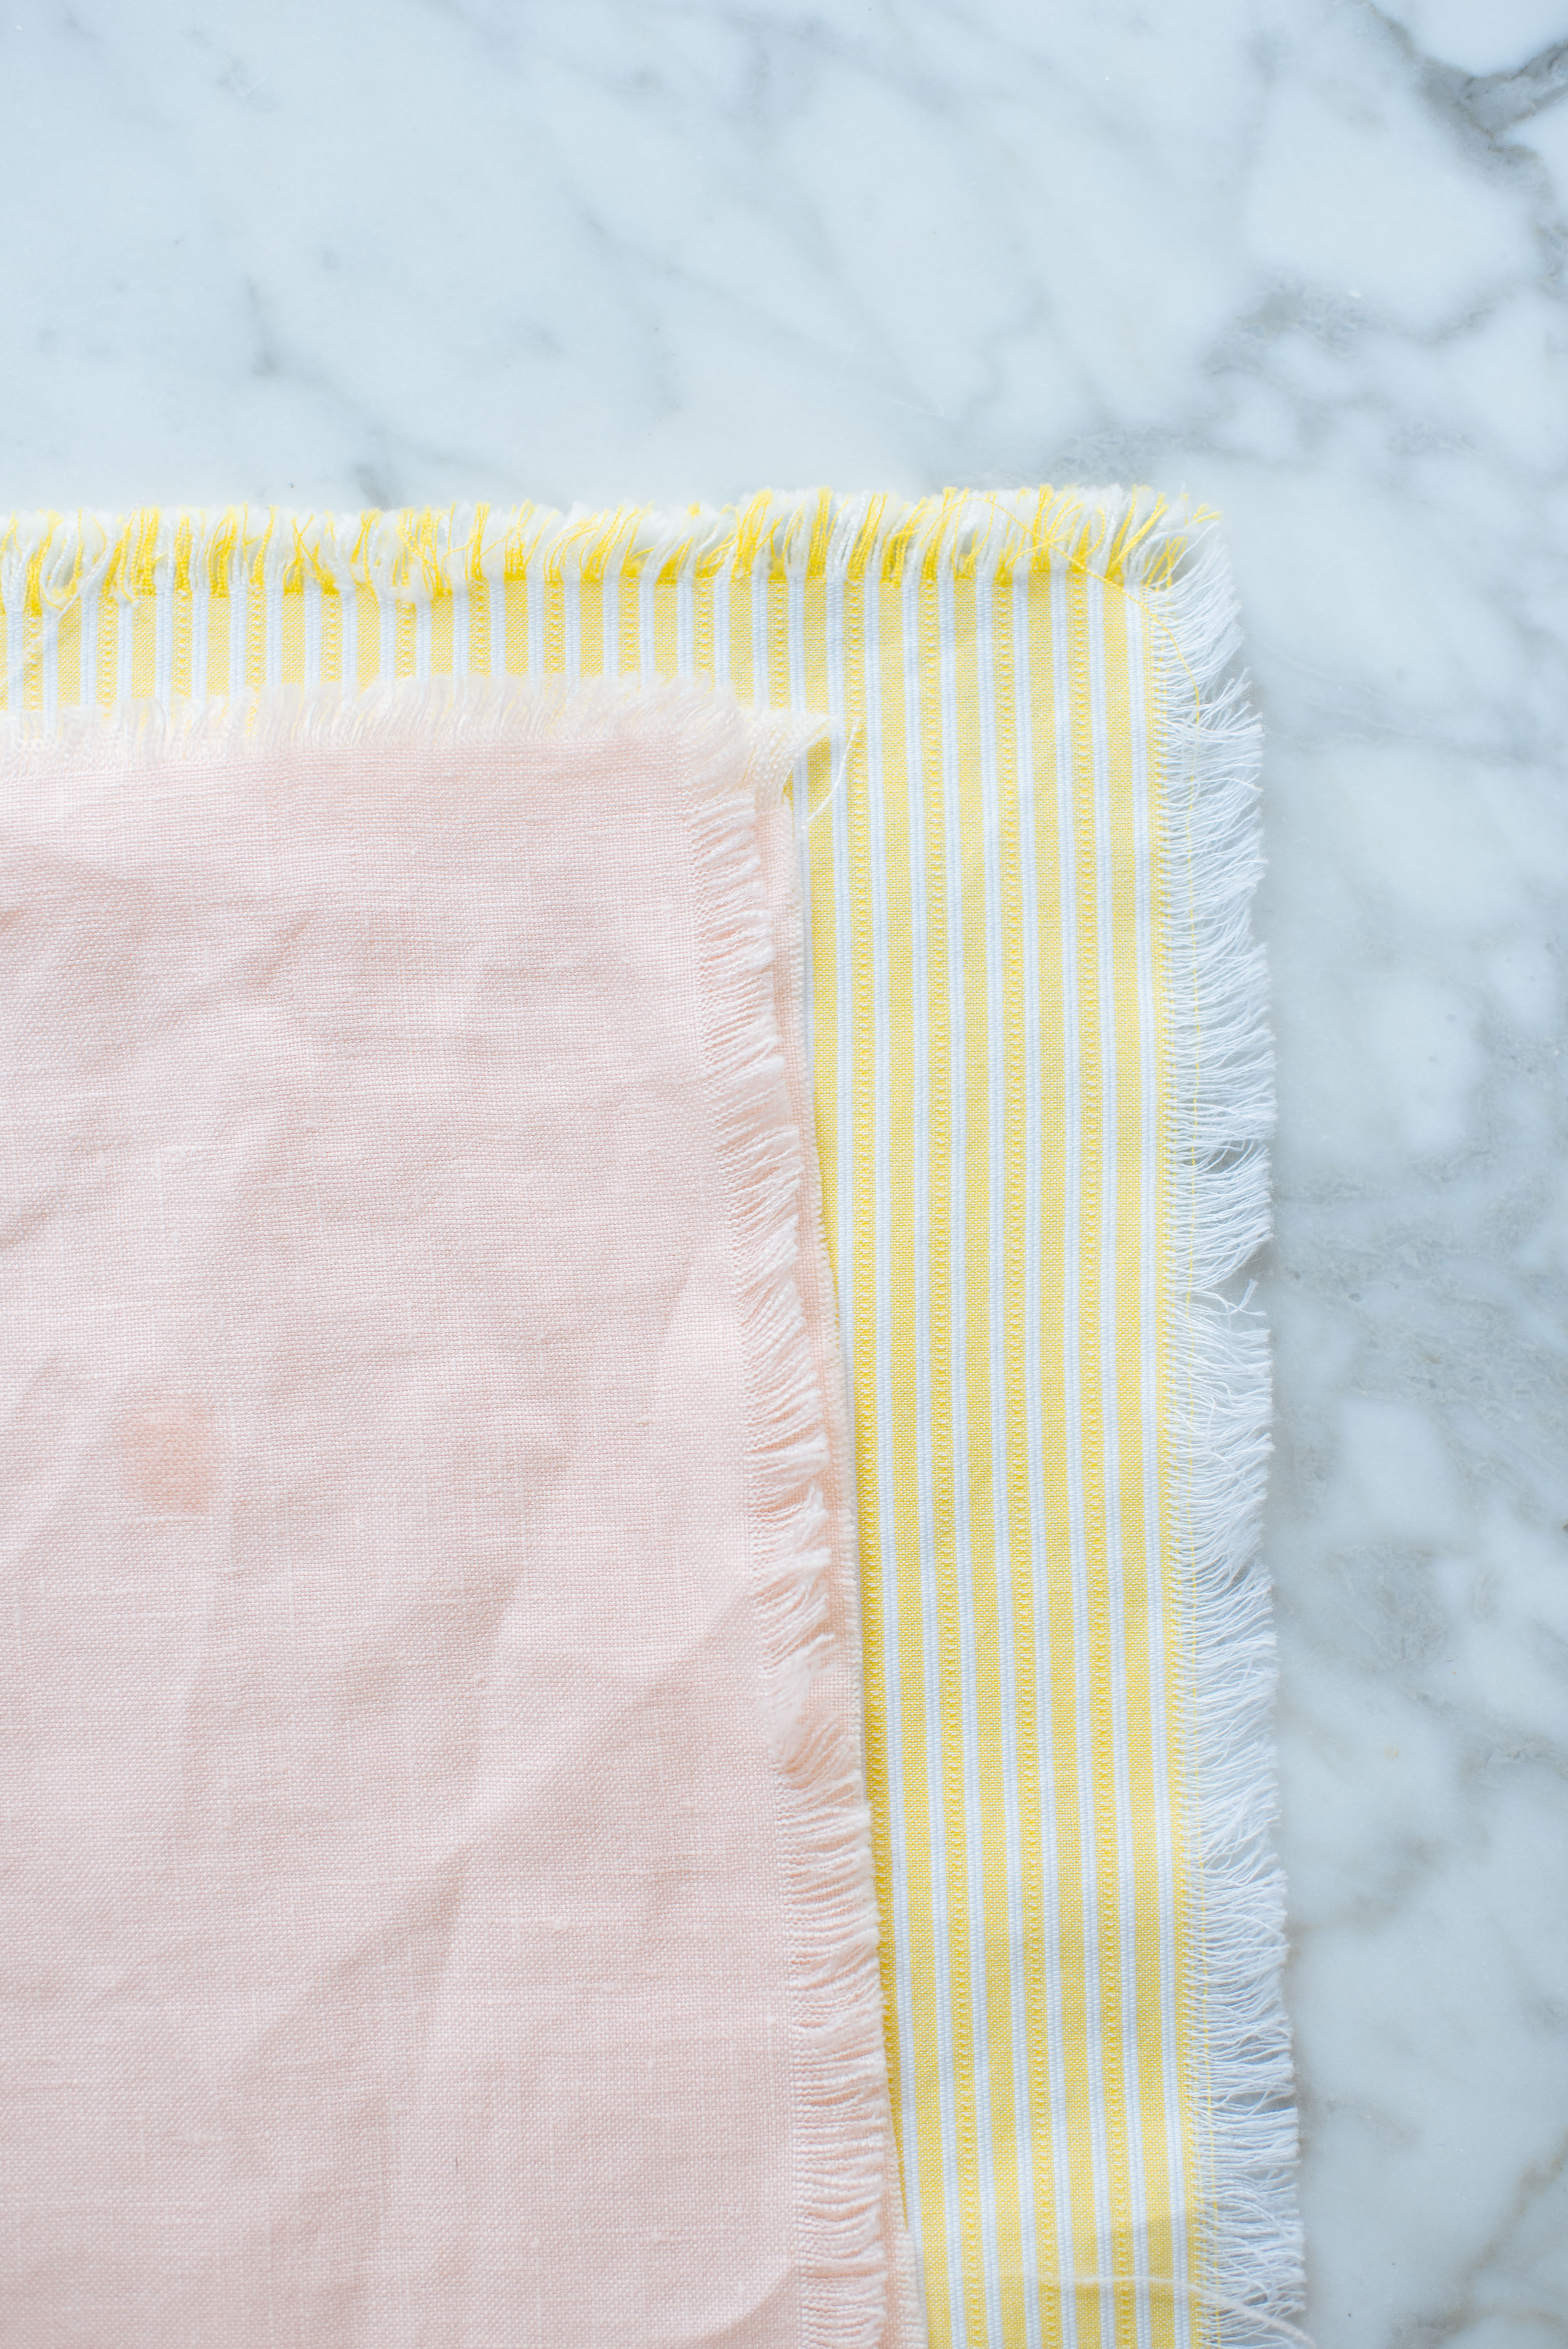 DIY frayed linen napkins